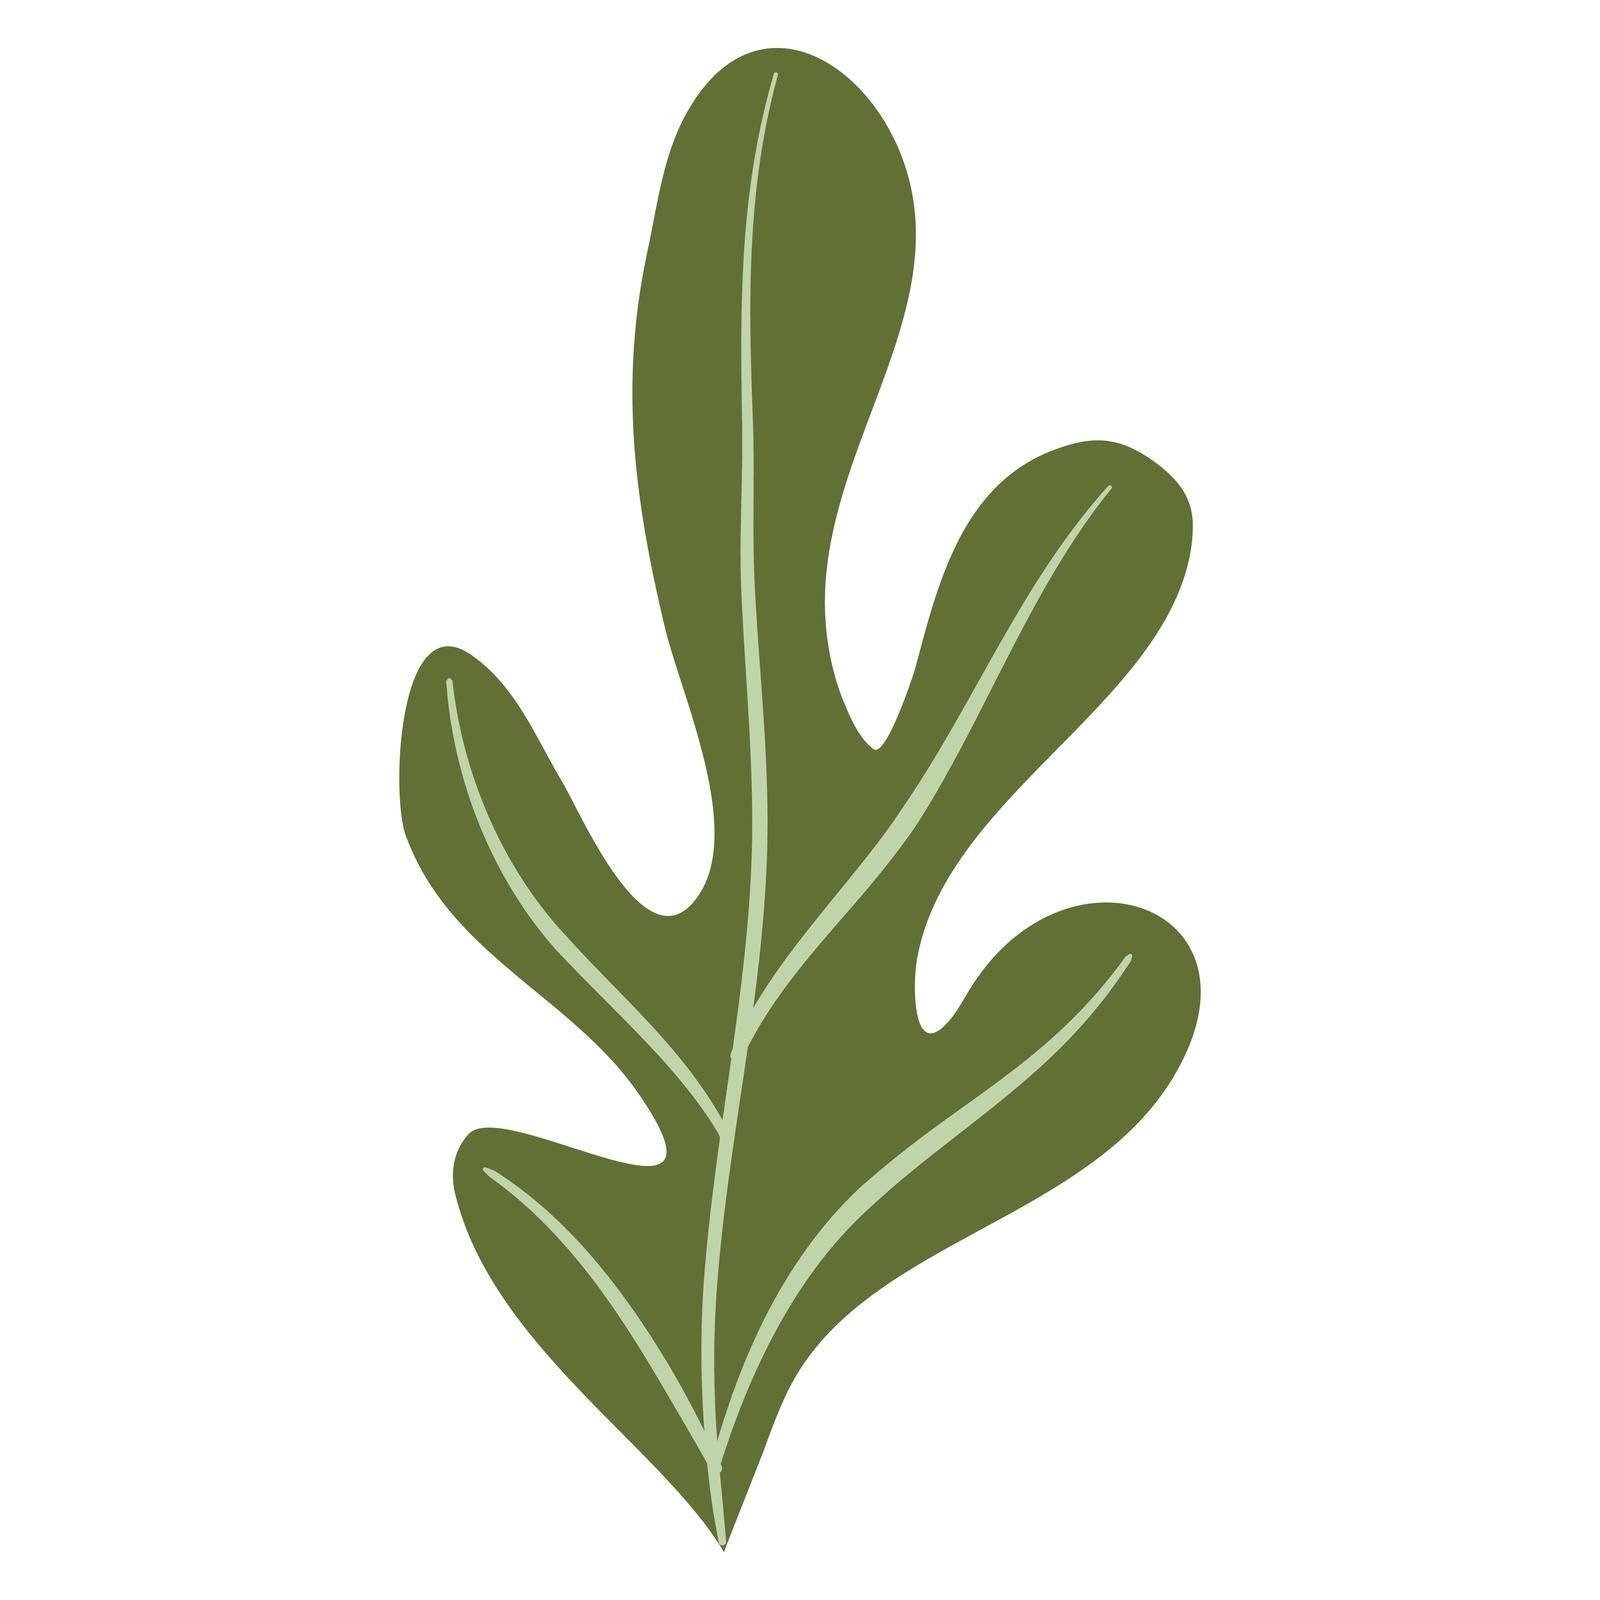 Hand Drawn Flat Doodle Leaf. Nature Green Leaf Design Element. Vector illustration